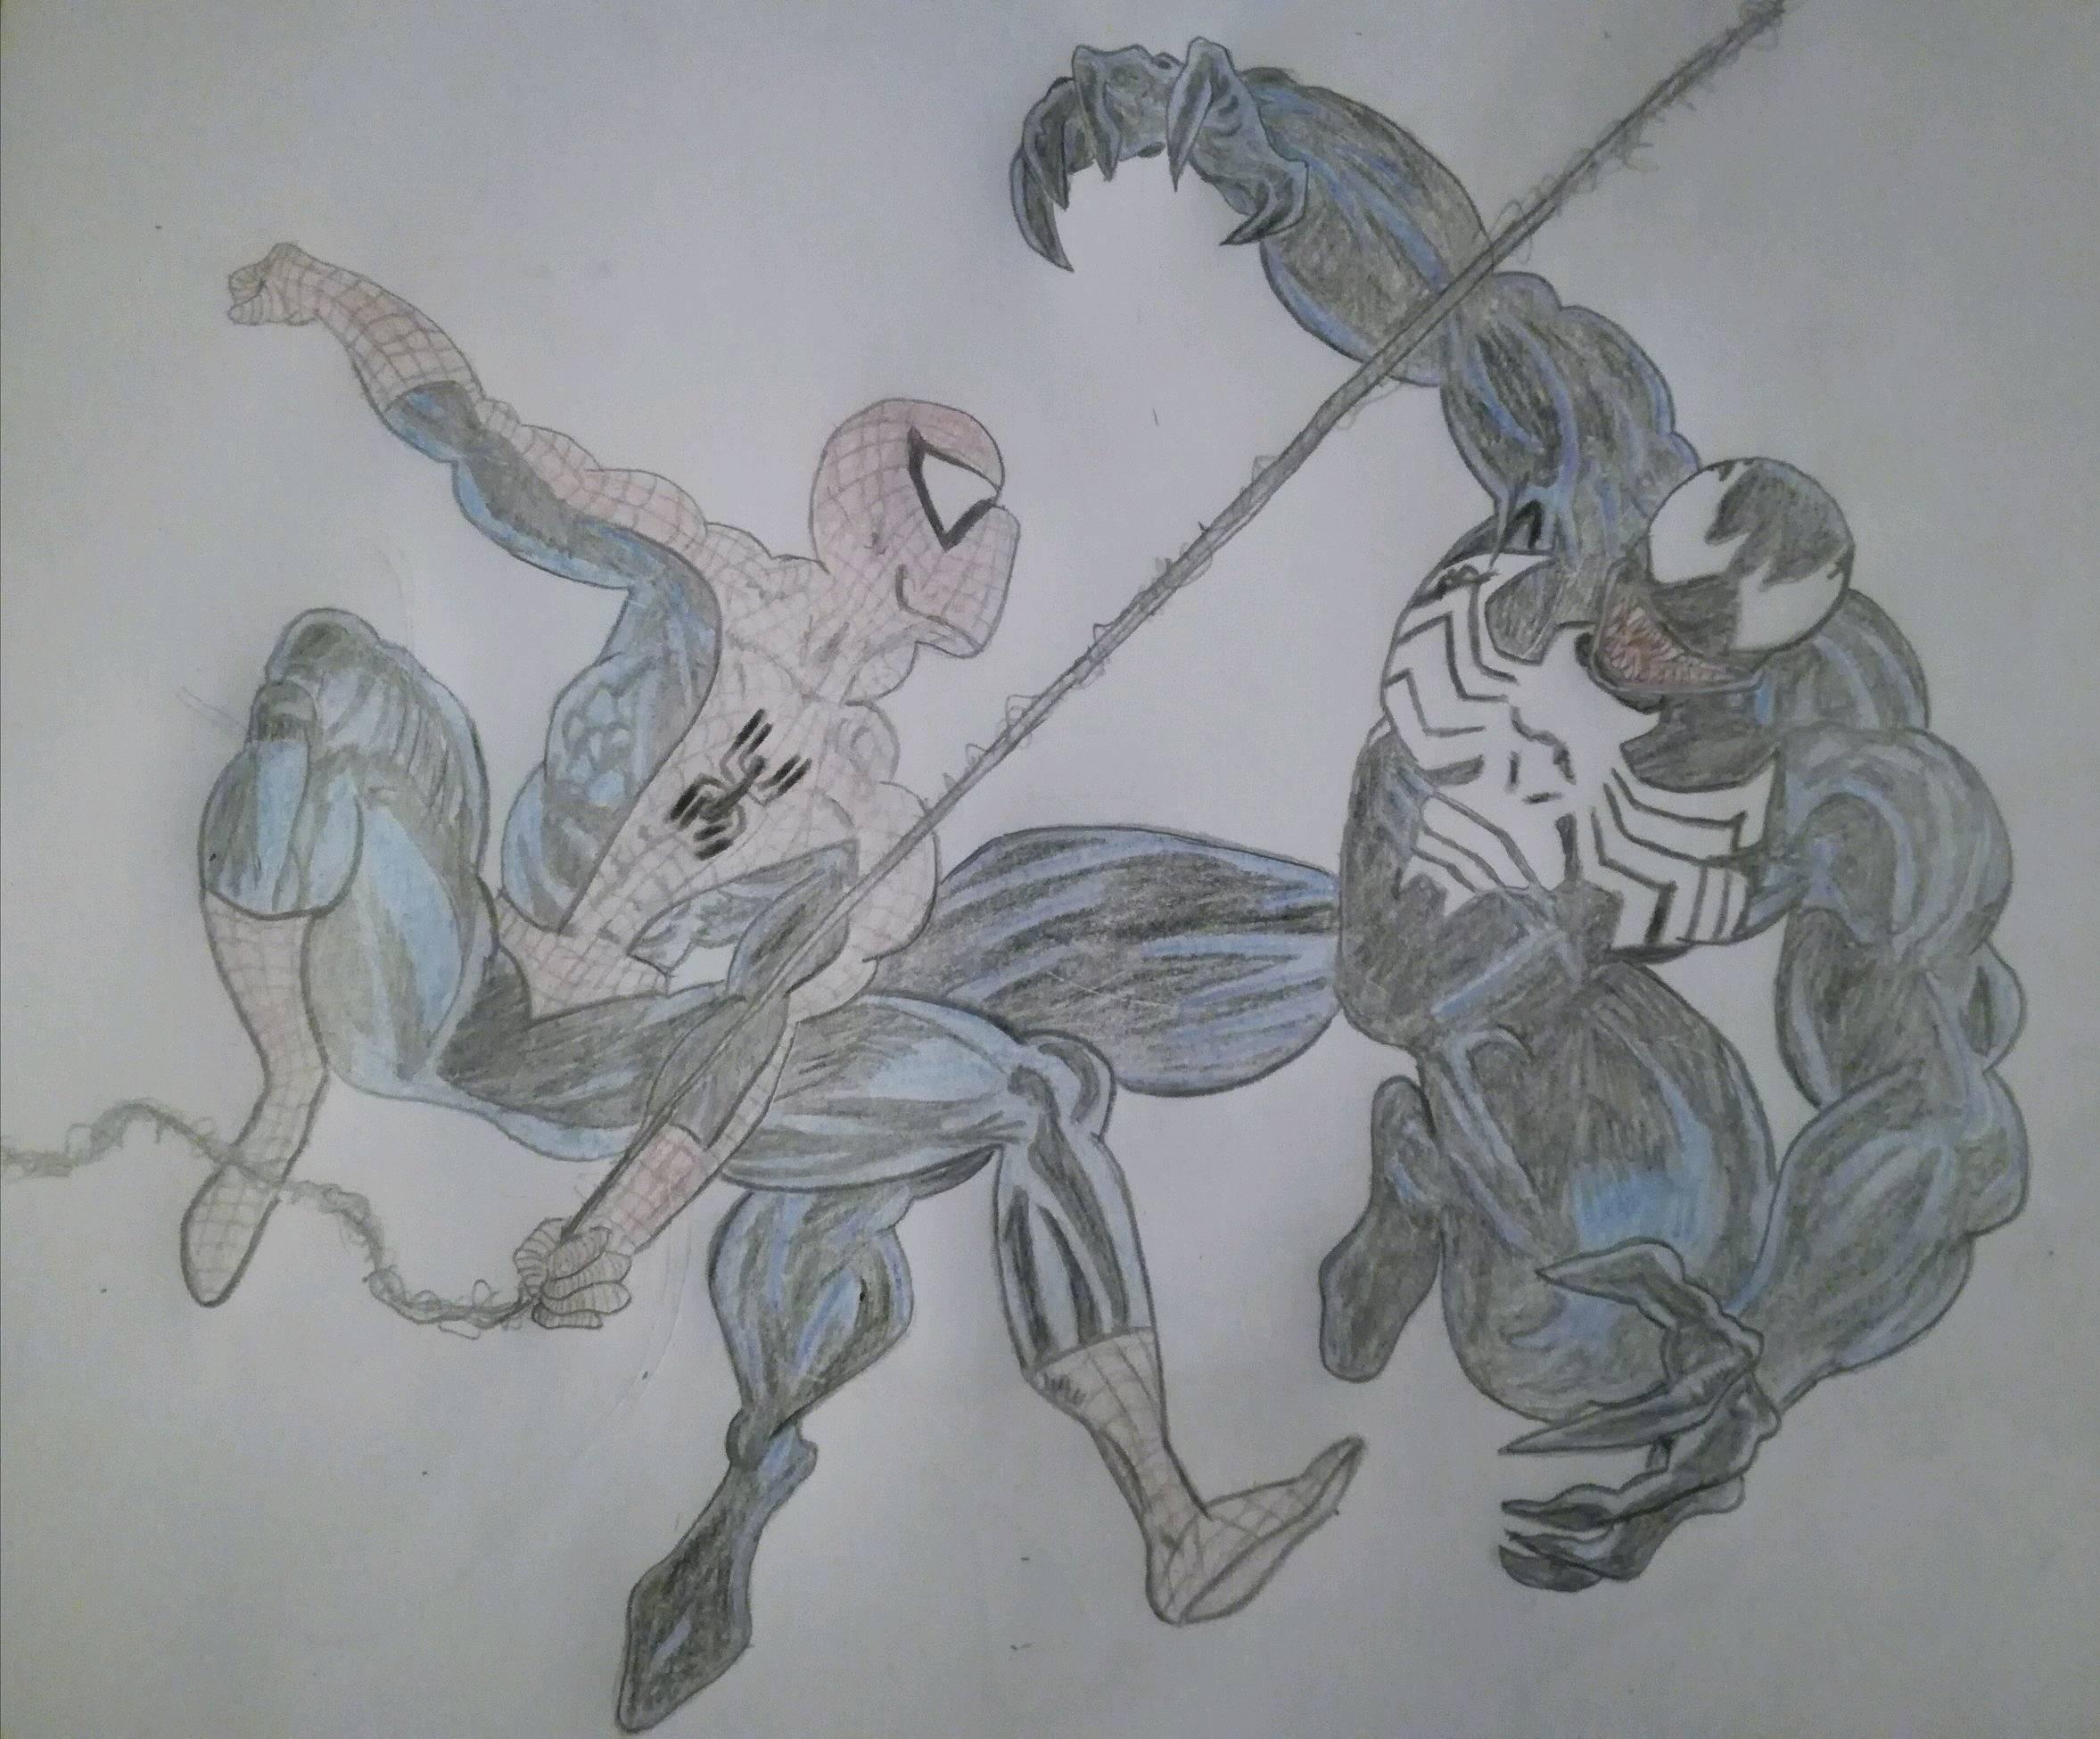 Trial by Comics  Spiderman Vs Venom  Steemit